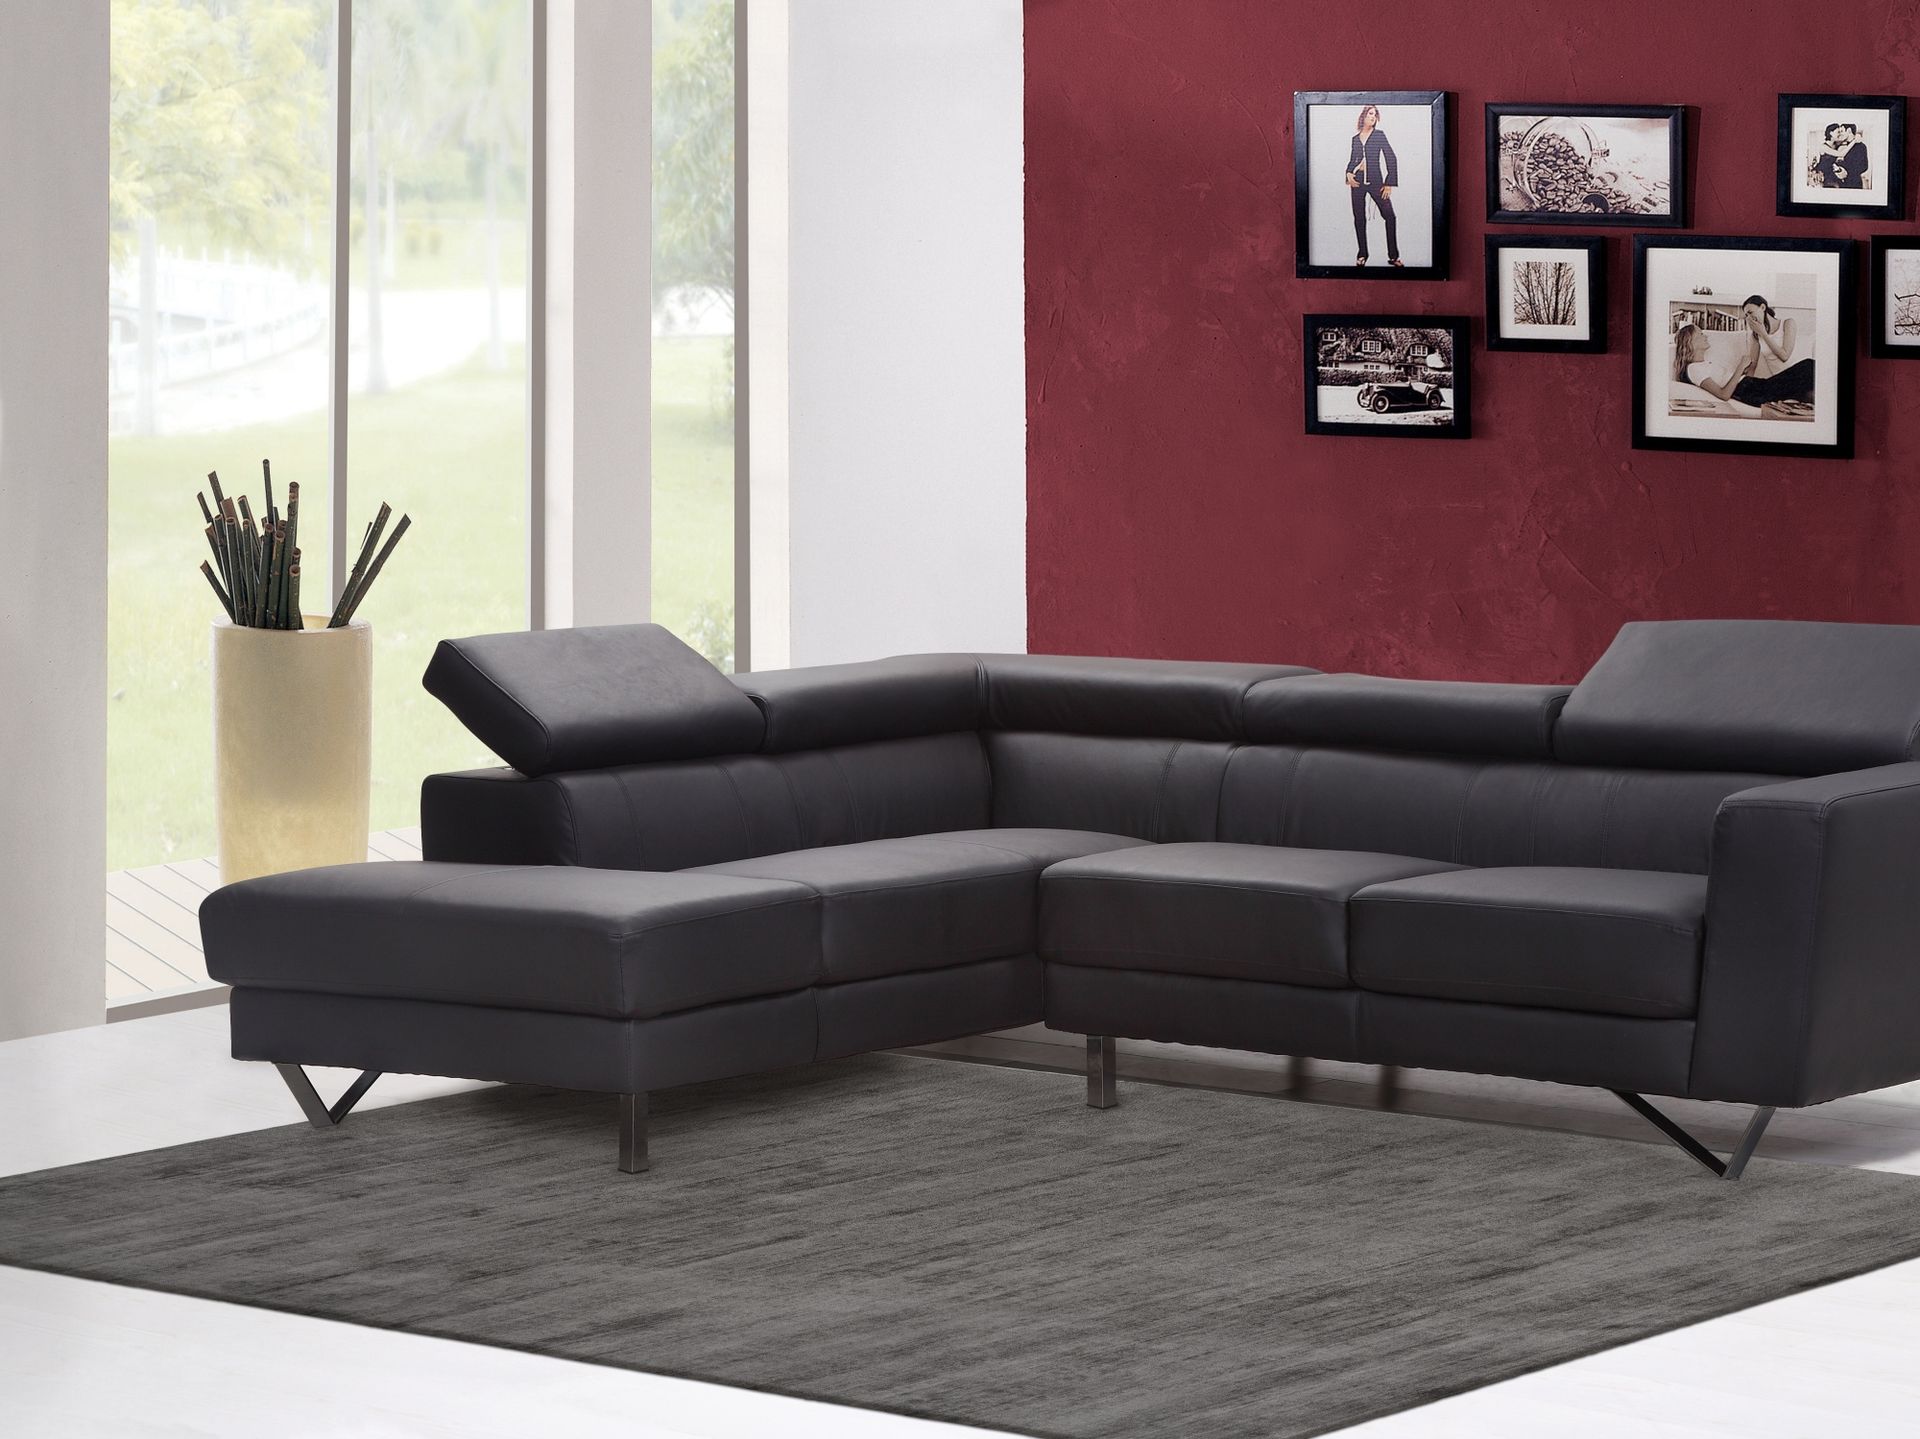 Foto eines grauen Lyocell-Teppichs mit Cut-And-Loop-Optik in einem mordernen Wohnzimmer mit einer schwarzen Couch.